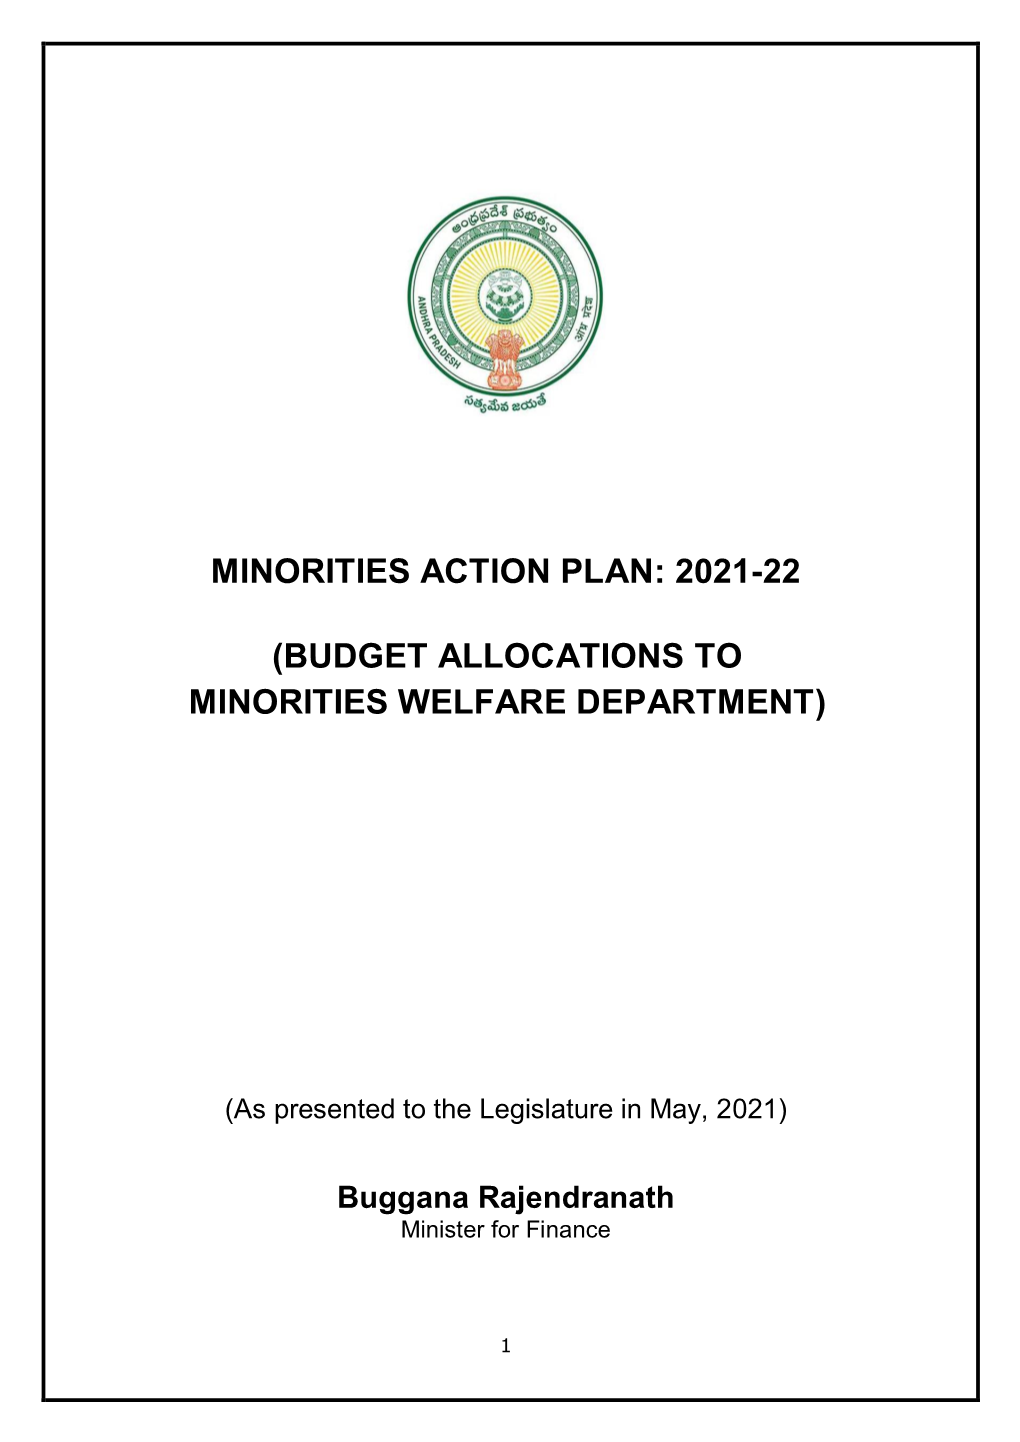 Budget Allocations to Minorities Welfare Department)